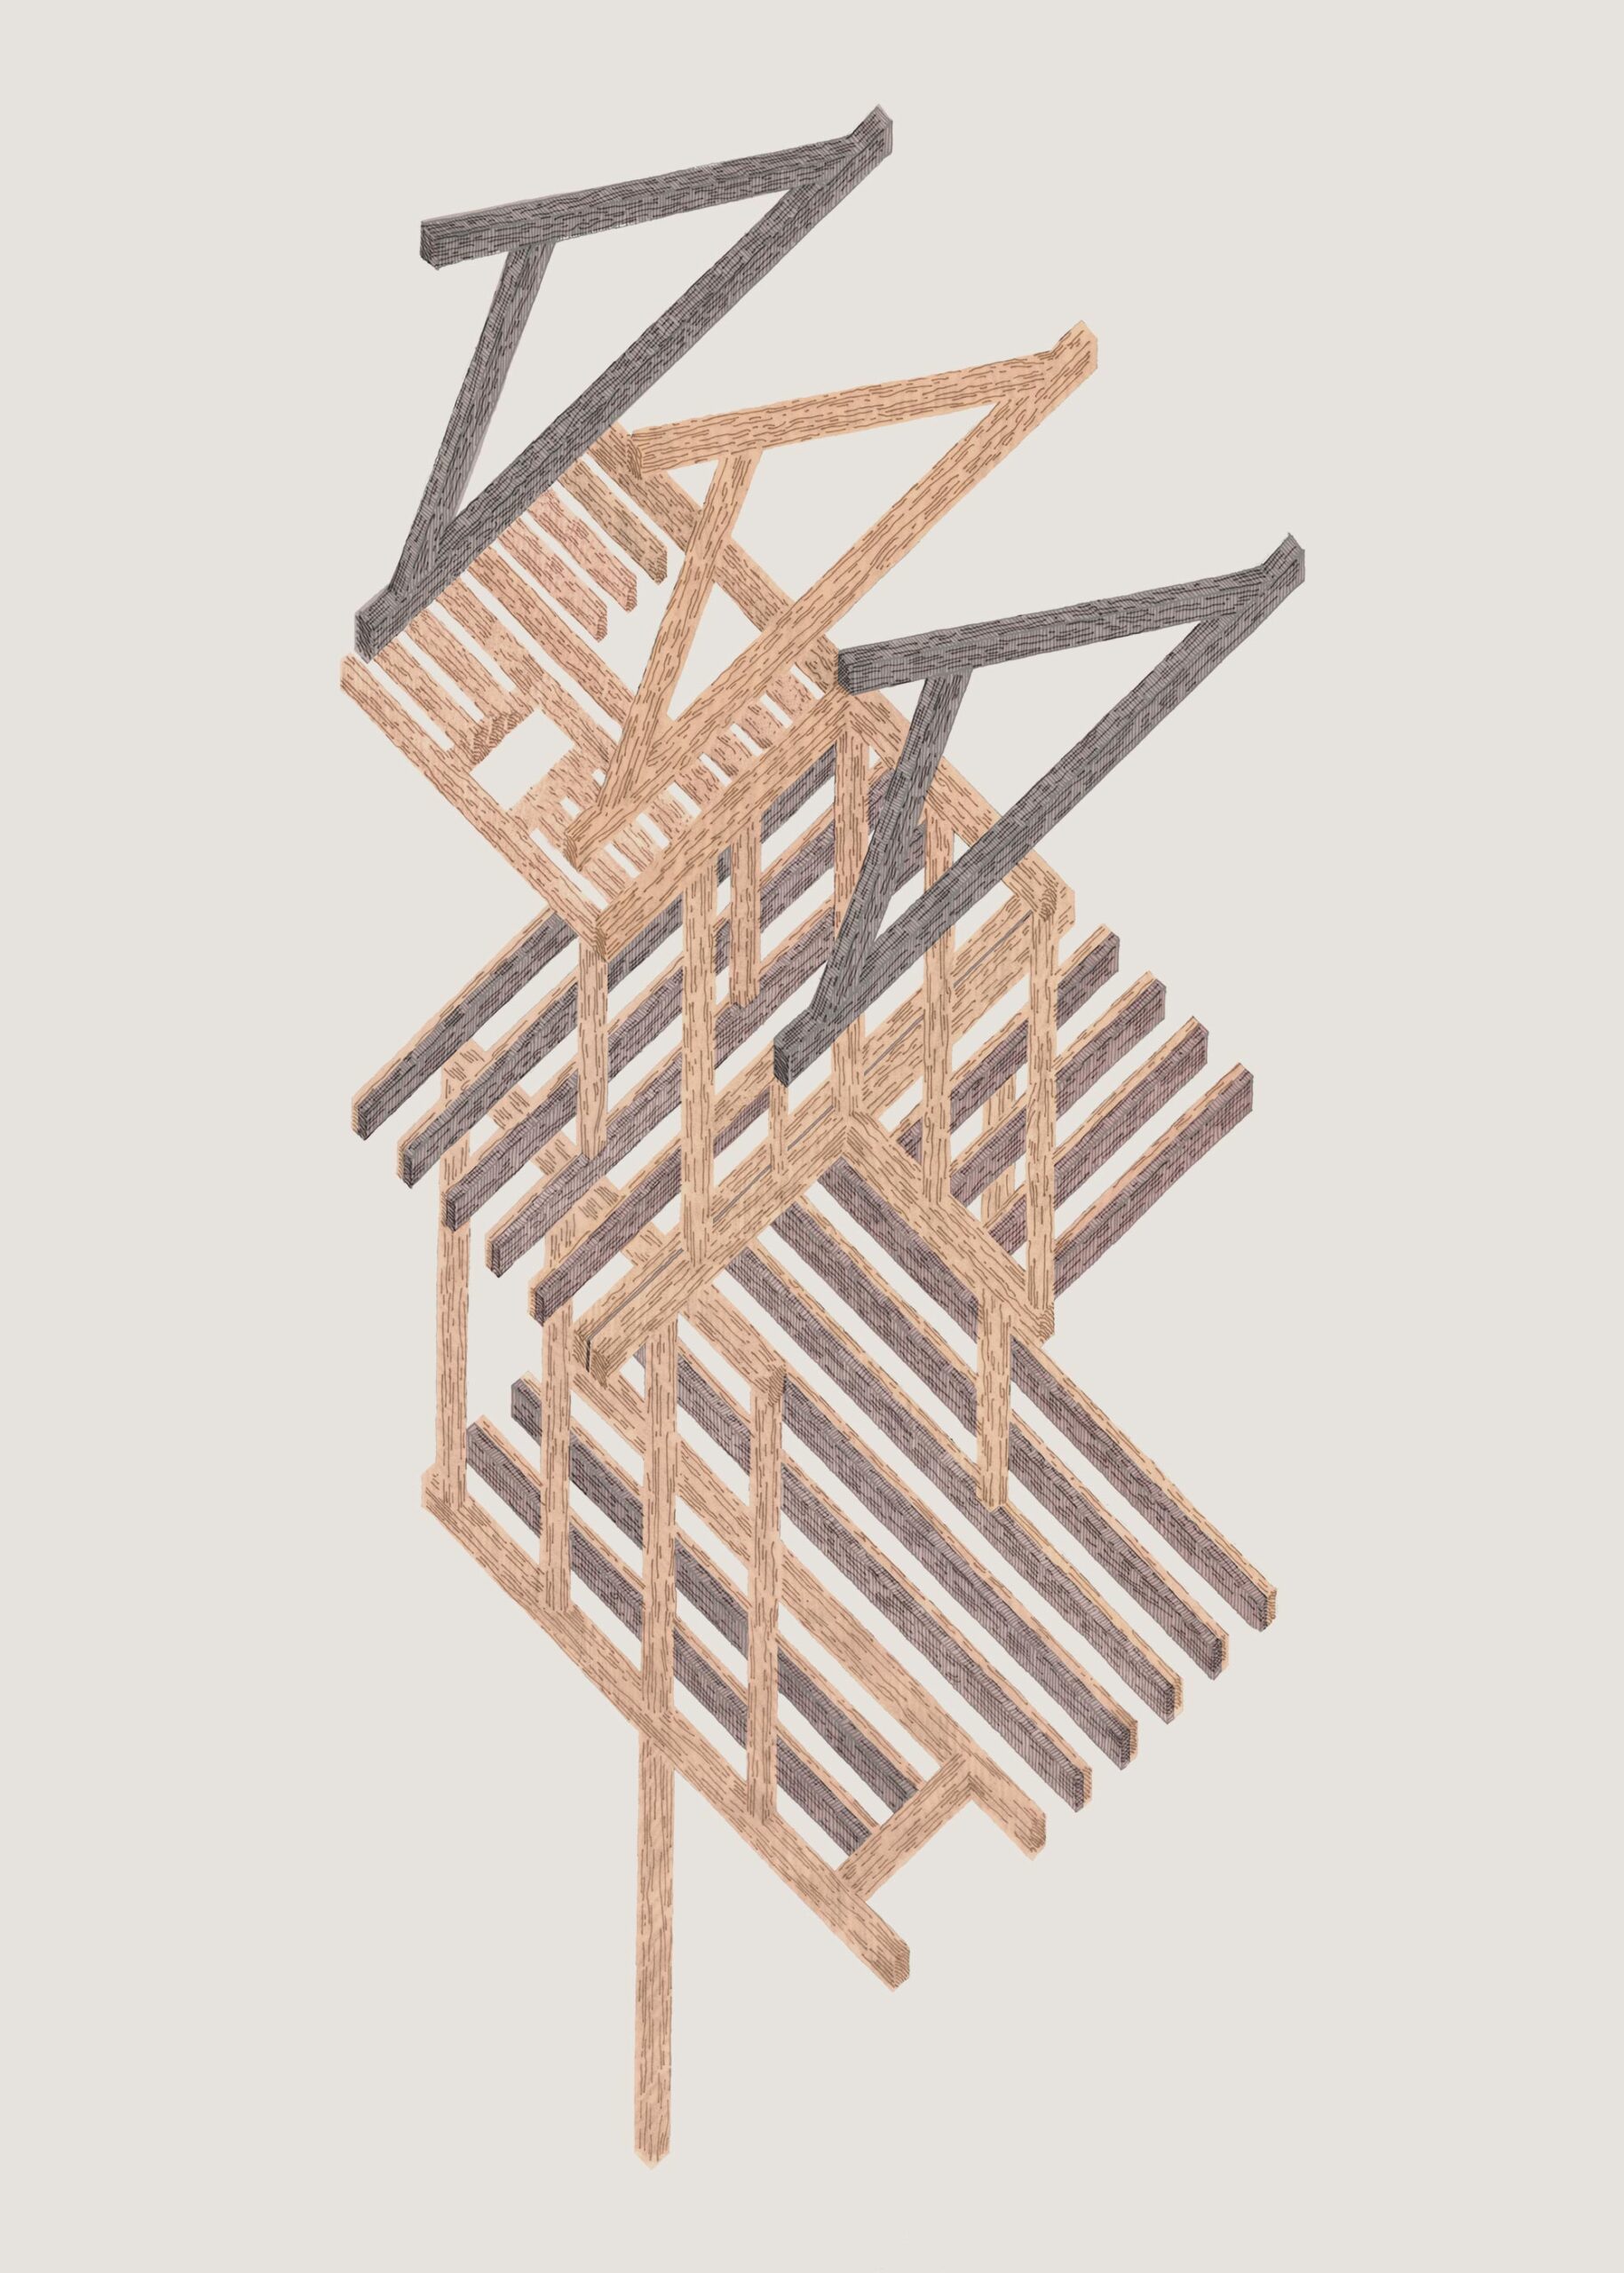 Axonométrie de la structure en bois en treillis ; un poteau singulier à la canopée structurelle.